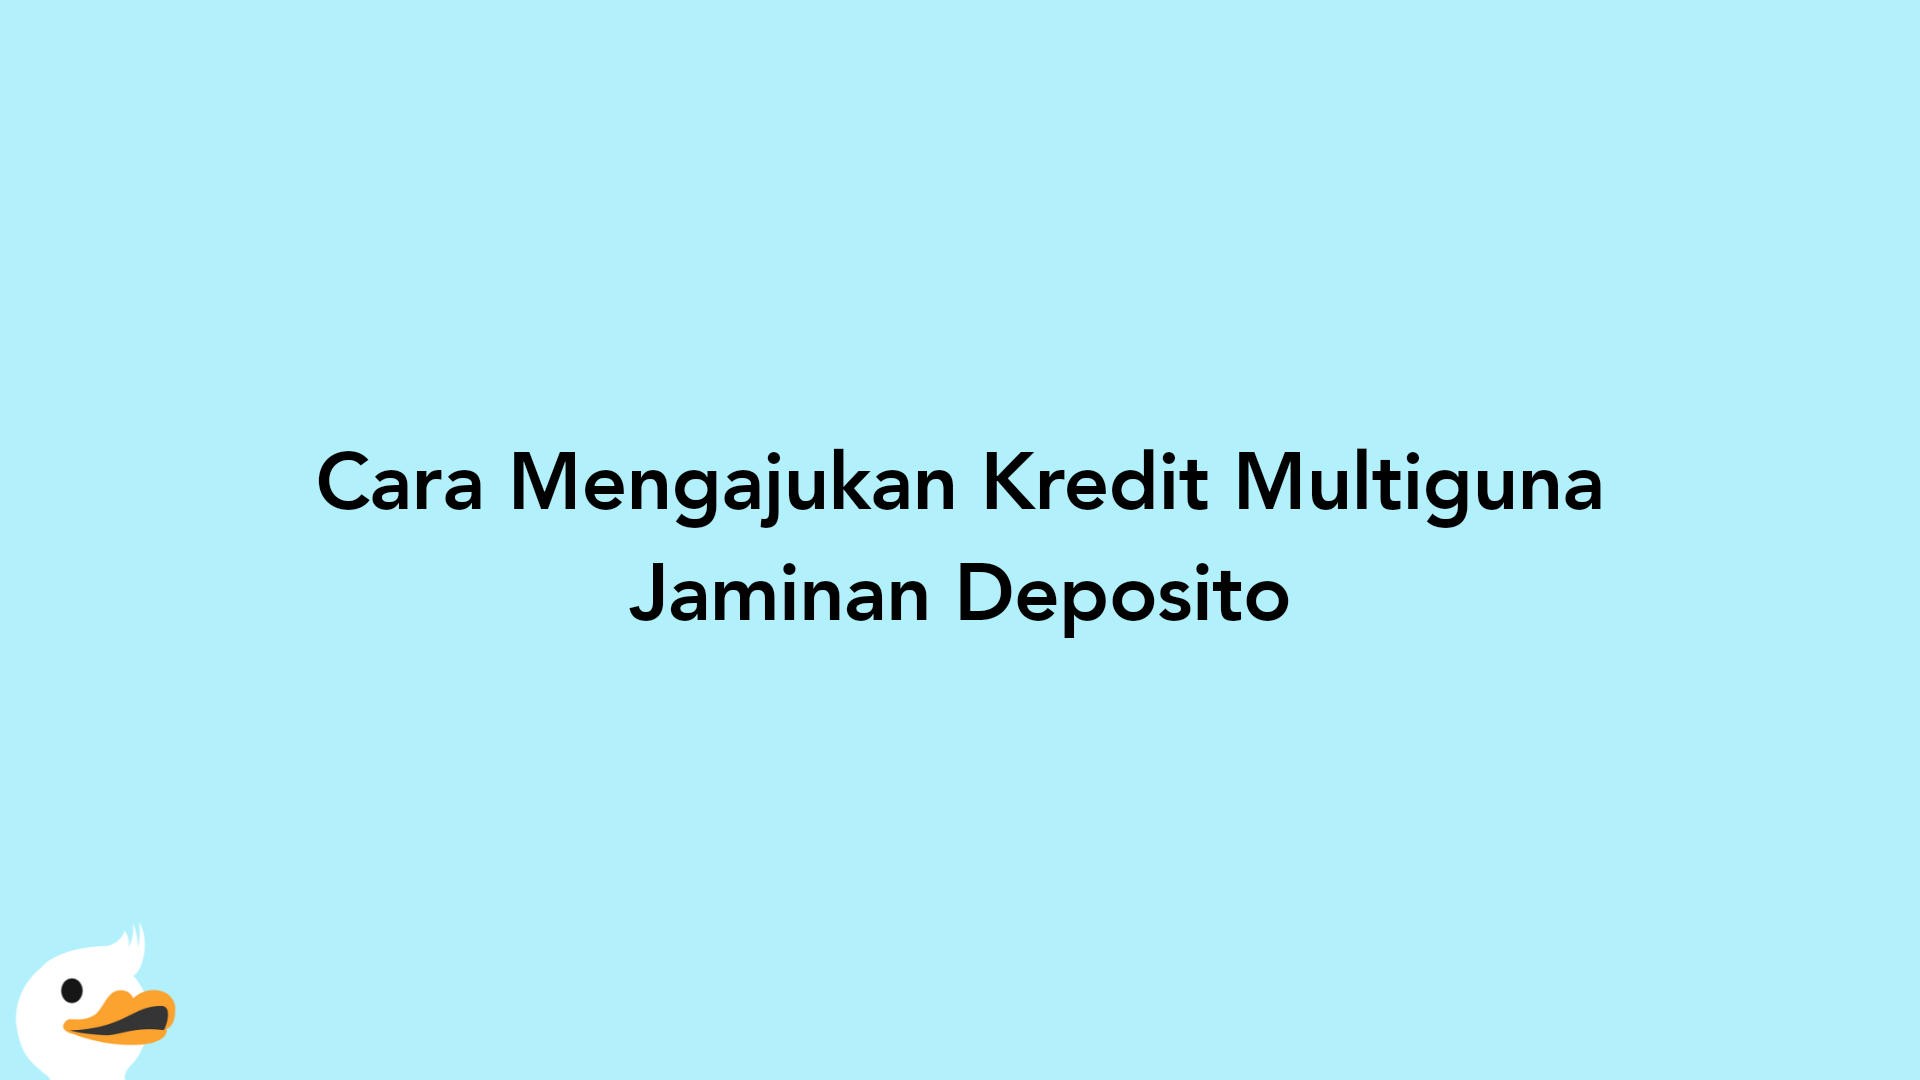 Cara Mengajukan Kredit Multiguna Jaminan Deposito